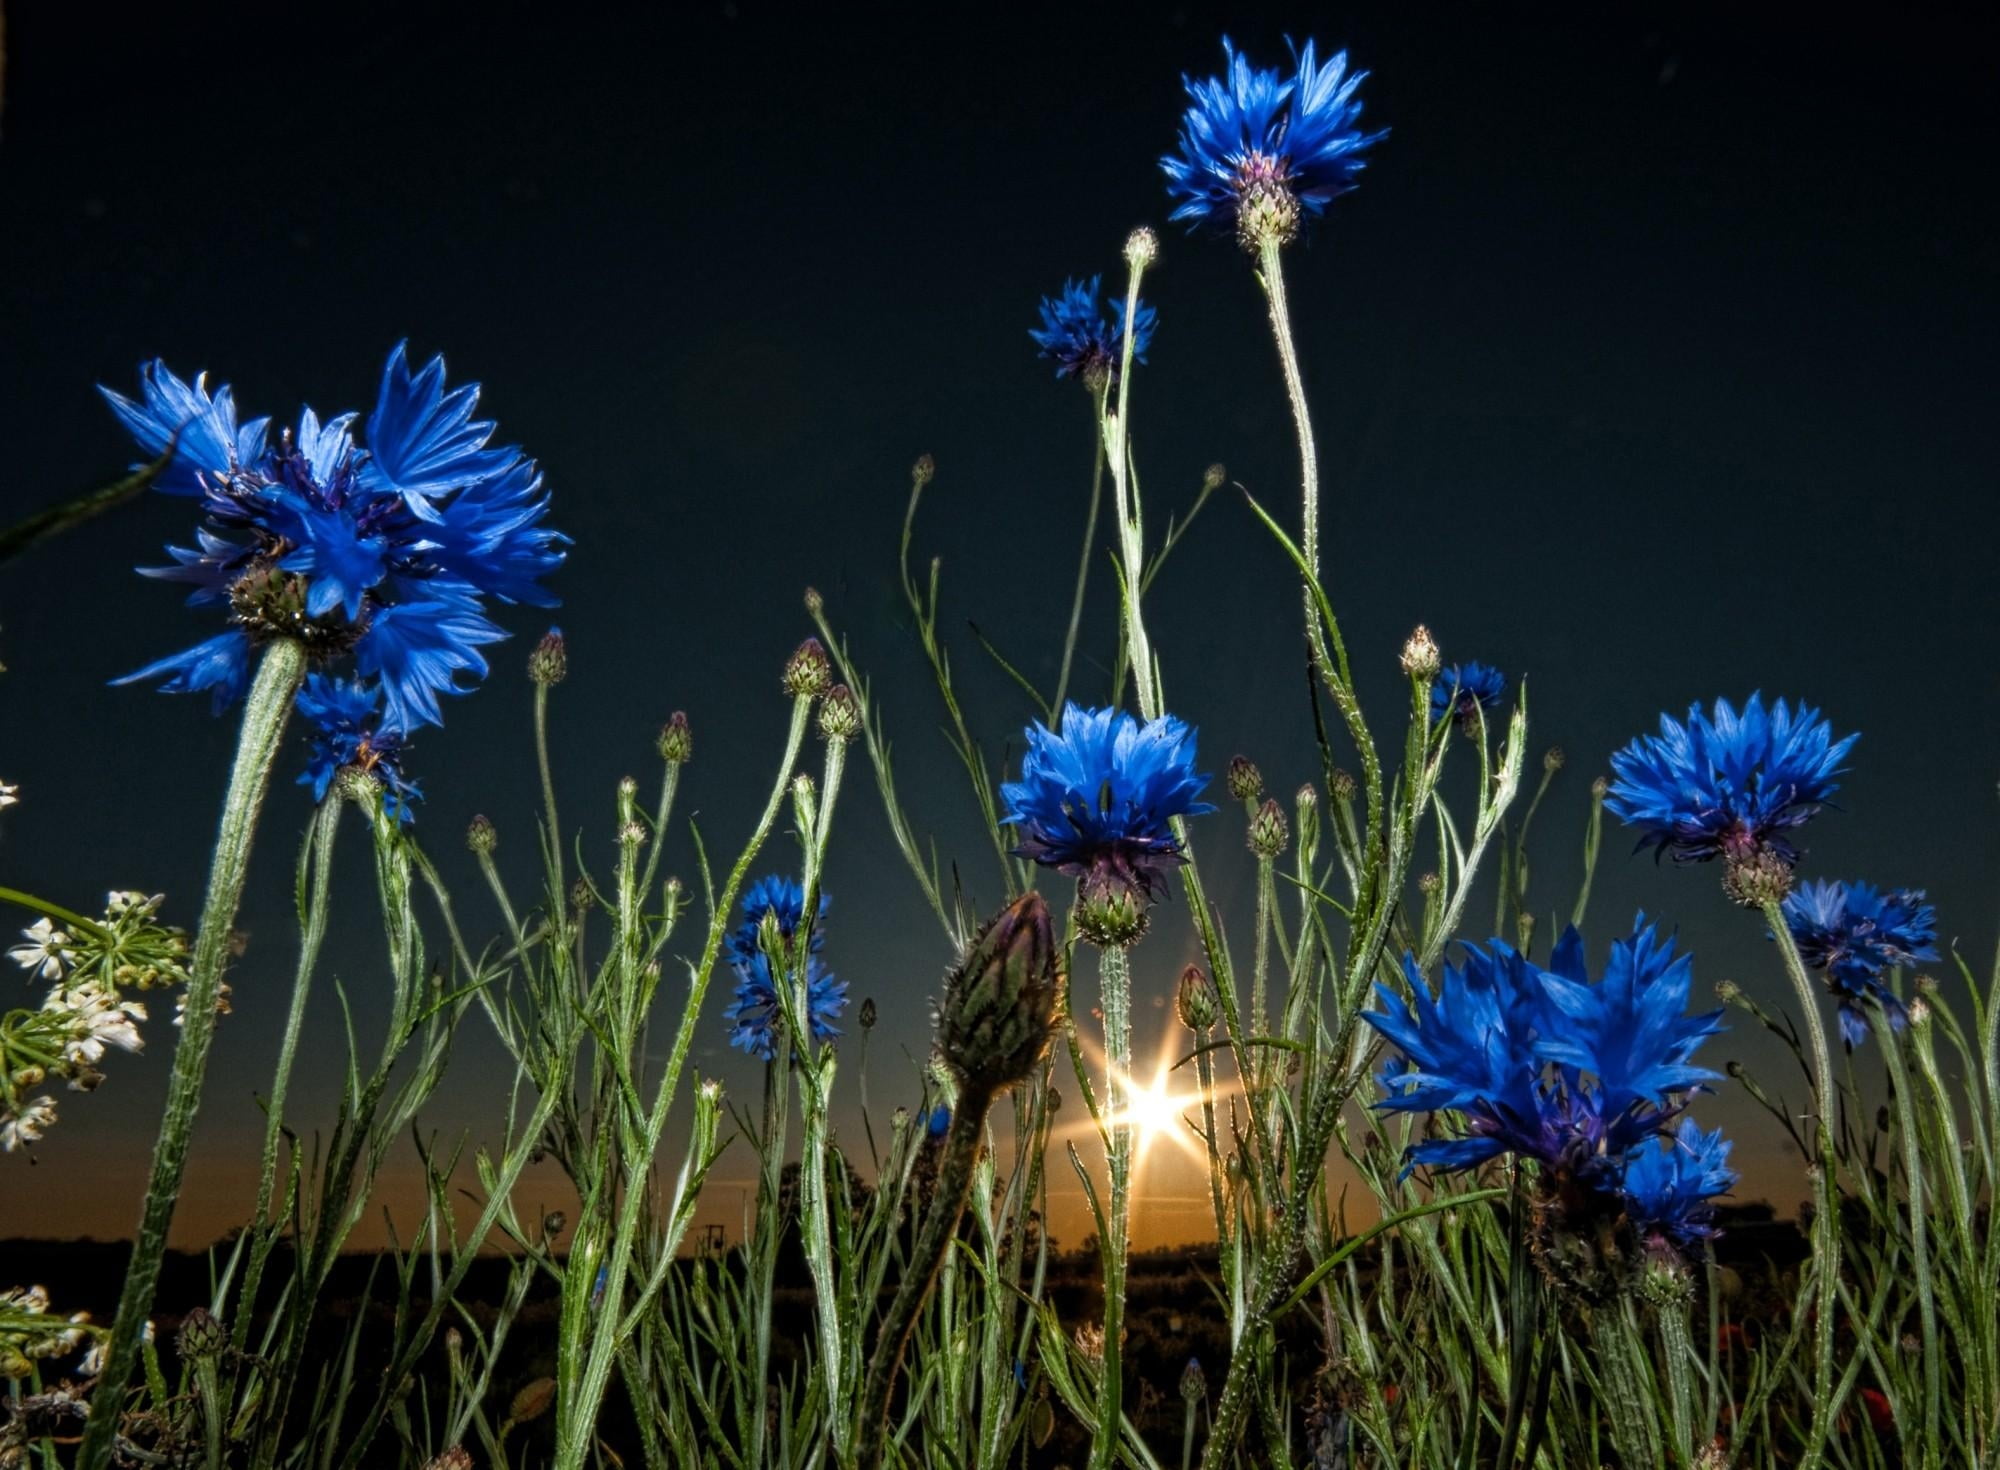 blue petaled flower wallpaper, cornflowers, meadow, evening, twilight